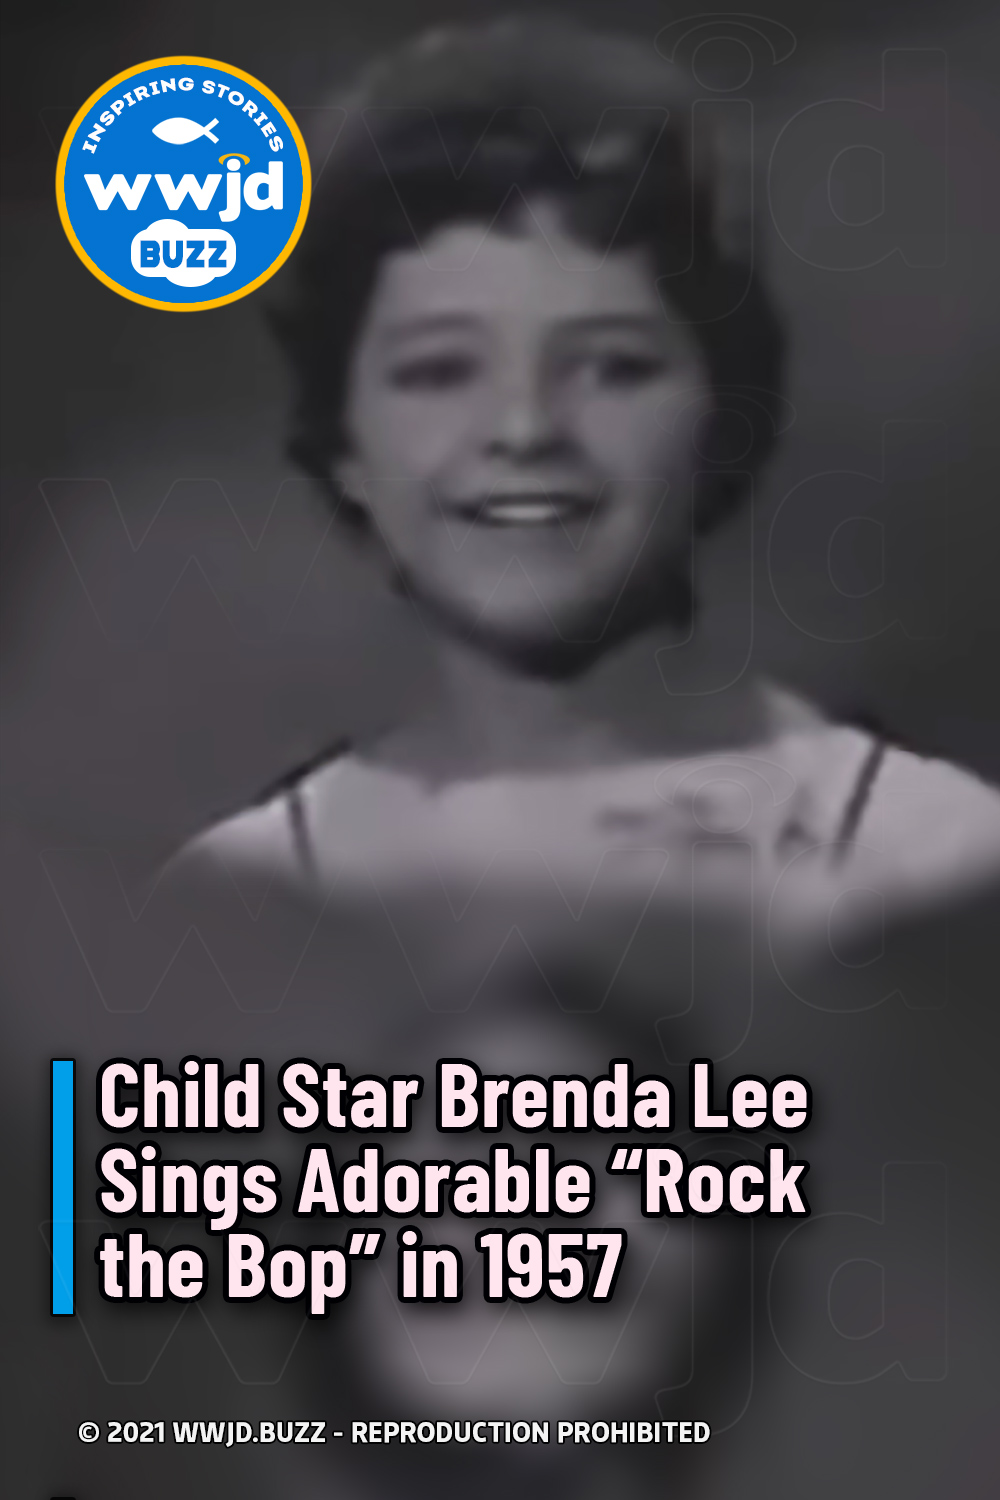 Child Star Brenda Lee Sings Adorable “Rock the Bop” in 1957